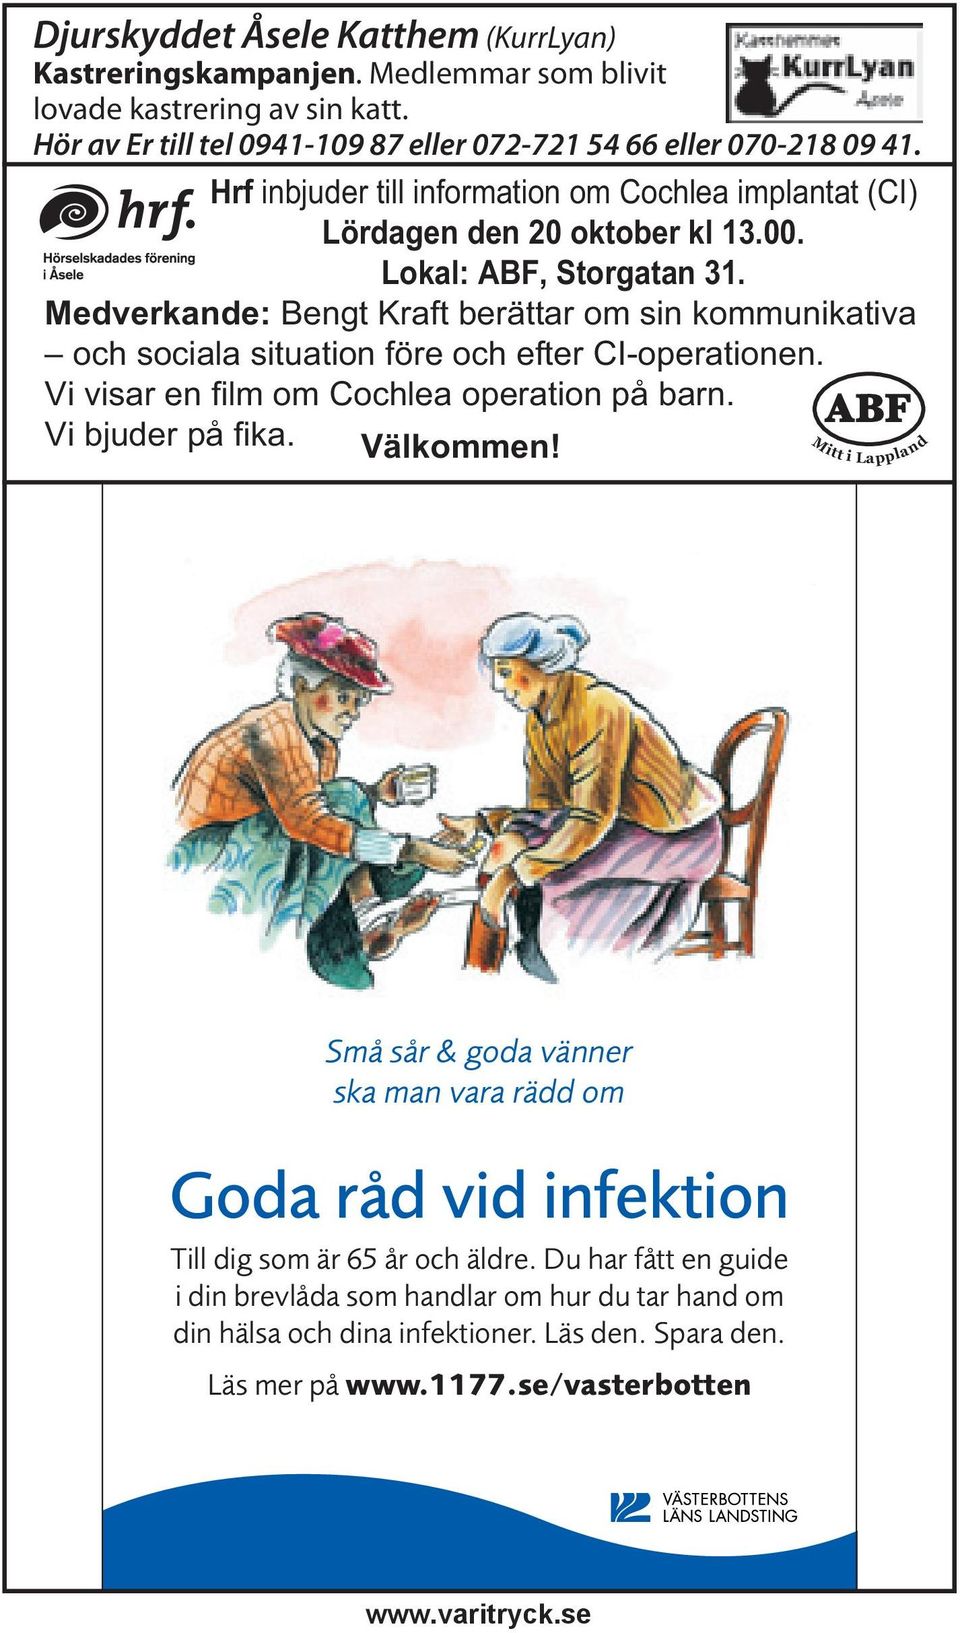 Hrf inbjuder till information om Cochlea implantat (CI) Lördagen den 20 oktober kl 13.00. Lokal: ABF, Storgatan 31.